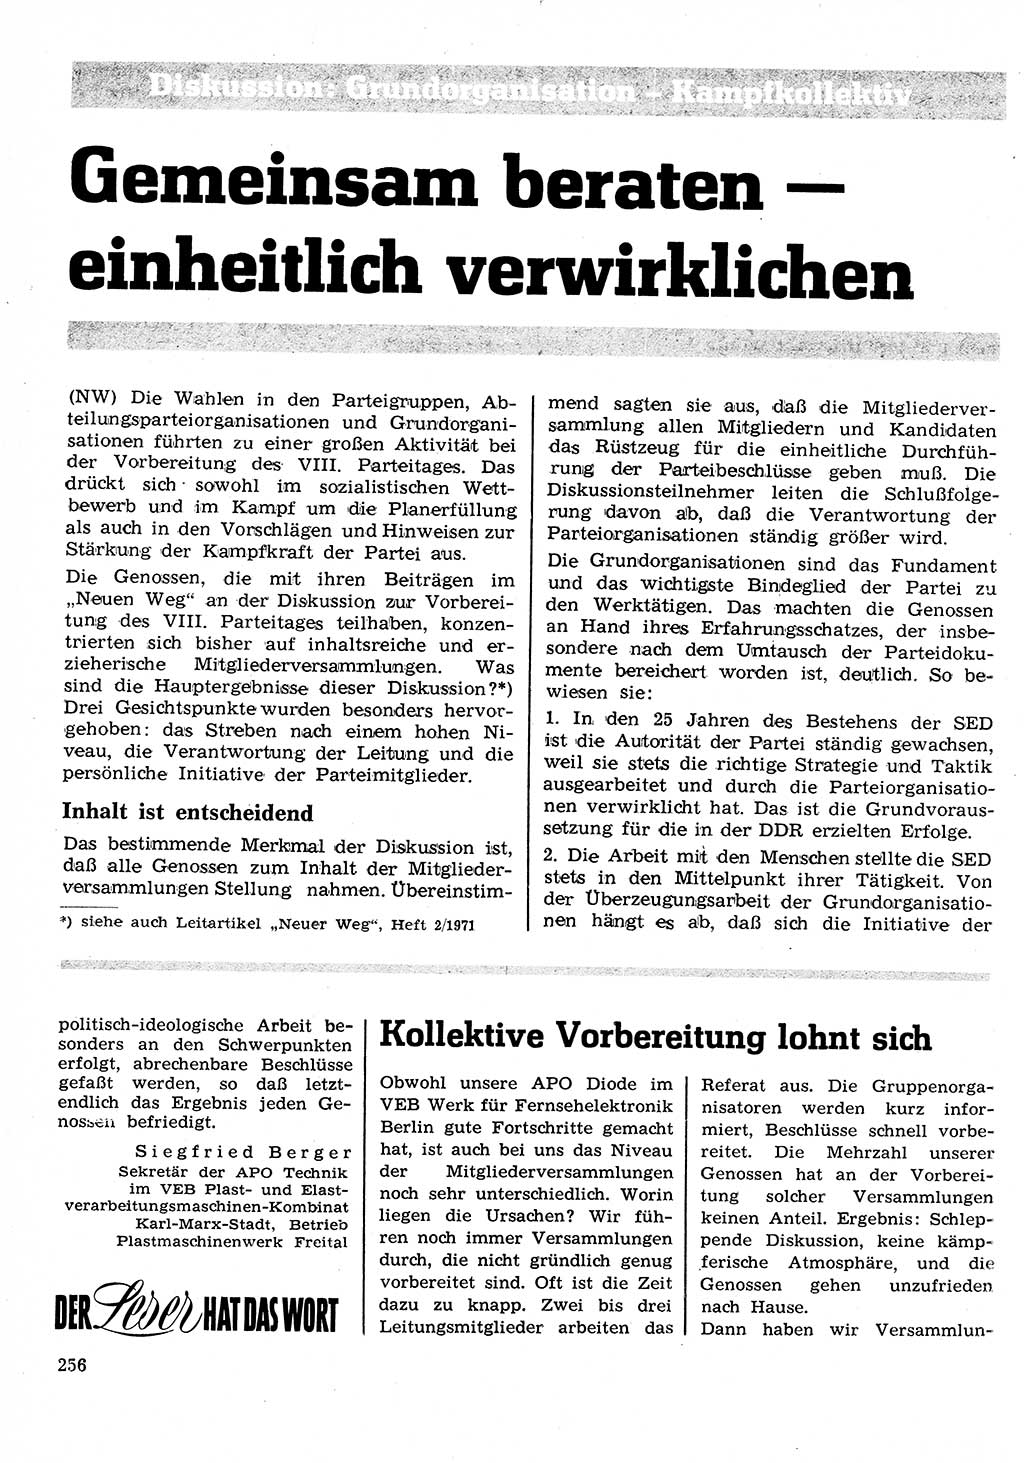 Neuer Weg (NW), Organ des Zentralkomitees (ZK) der SED (Sozialistische Einheitspartei Deutschlands) für Fragen des Parteilebens, 26. Jahrgang [Deutsche Demokratische Republik (DDR)] 1971, Seite 256 (NW ZK SED DDR 1971, S. 256)